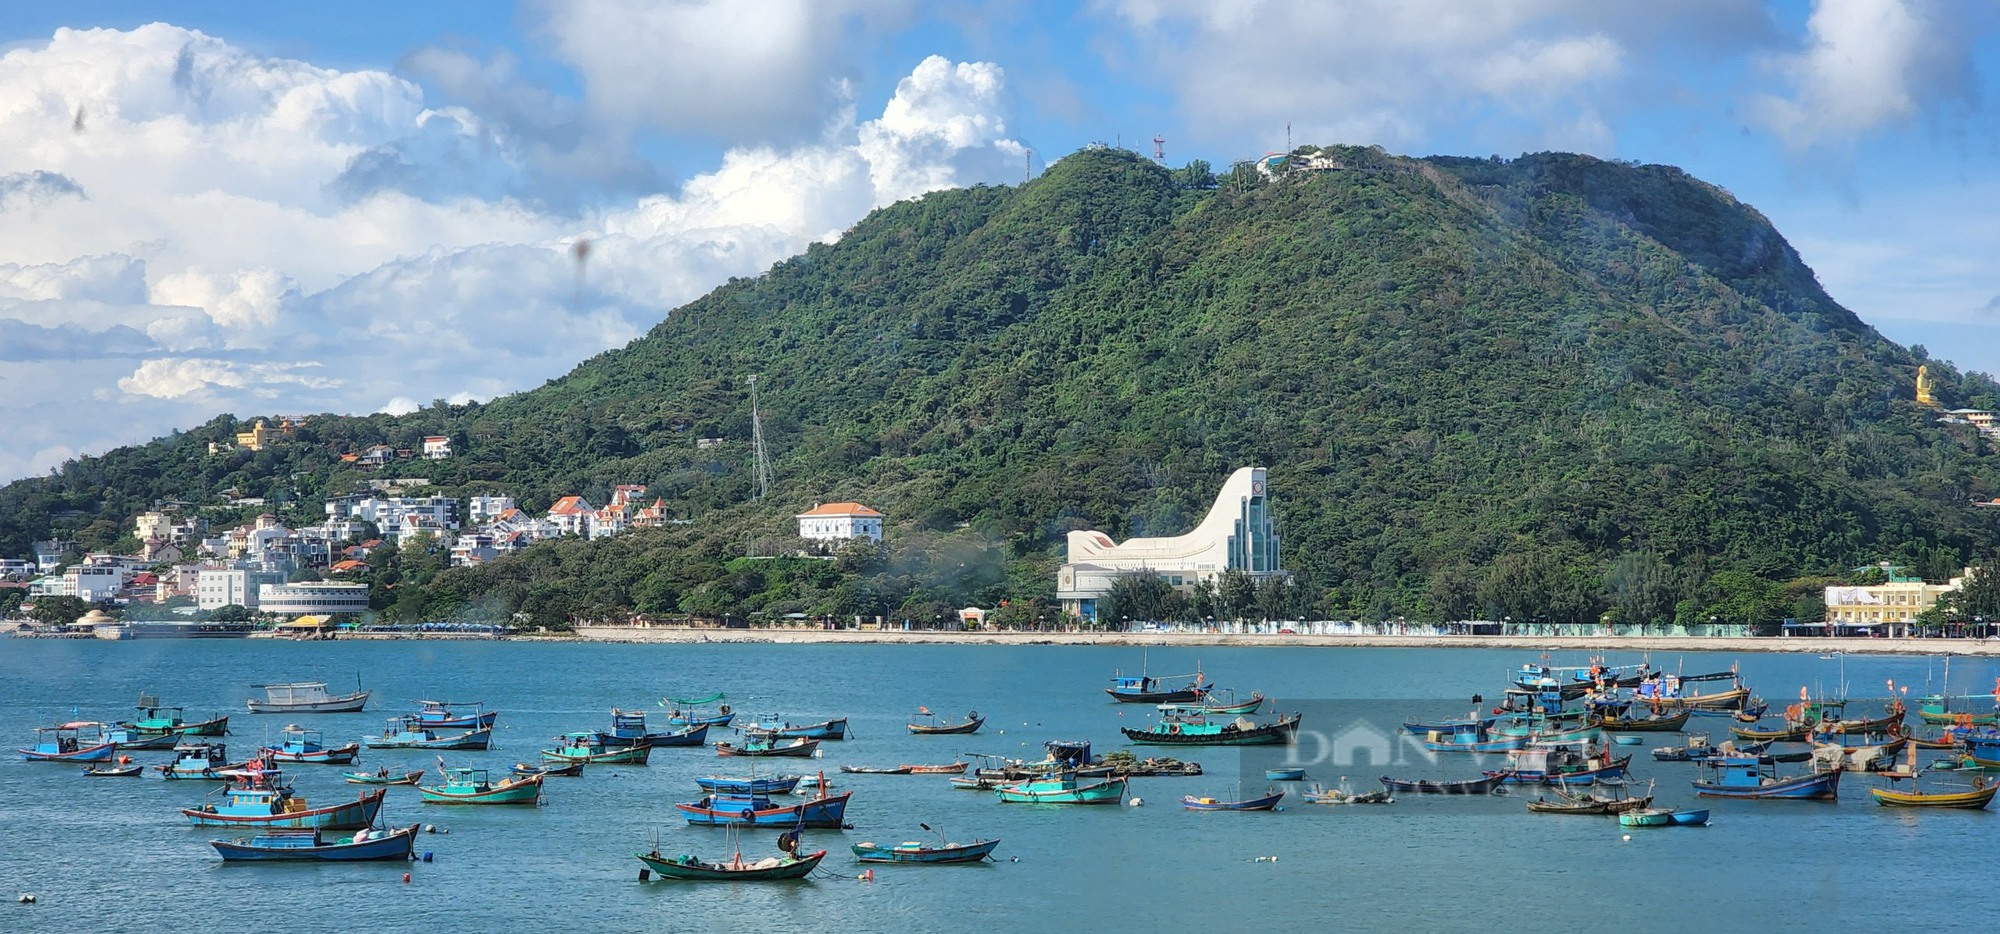 3 thành phố biển gần Sài Gòn phục vụ vui chơi lễ 30/4, chỉ 2 tiếng đi xe, phủ phê ăn hải sản- Ảnh 3.